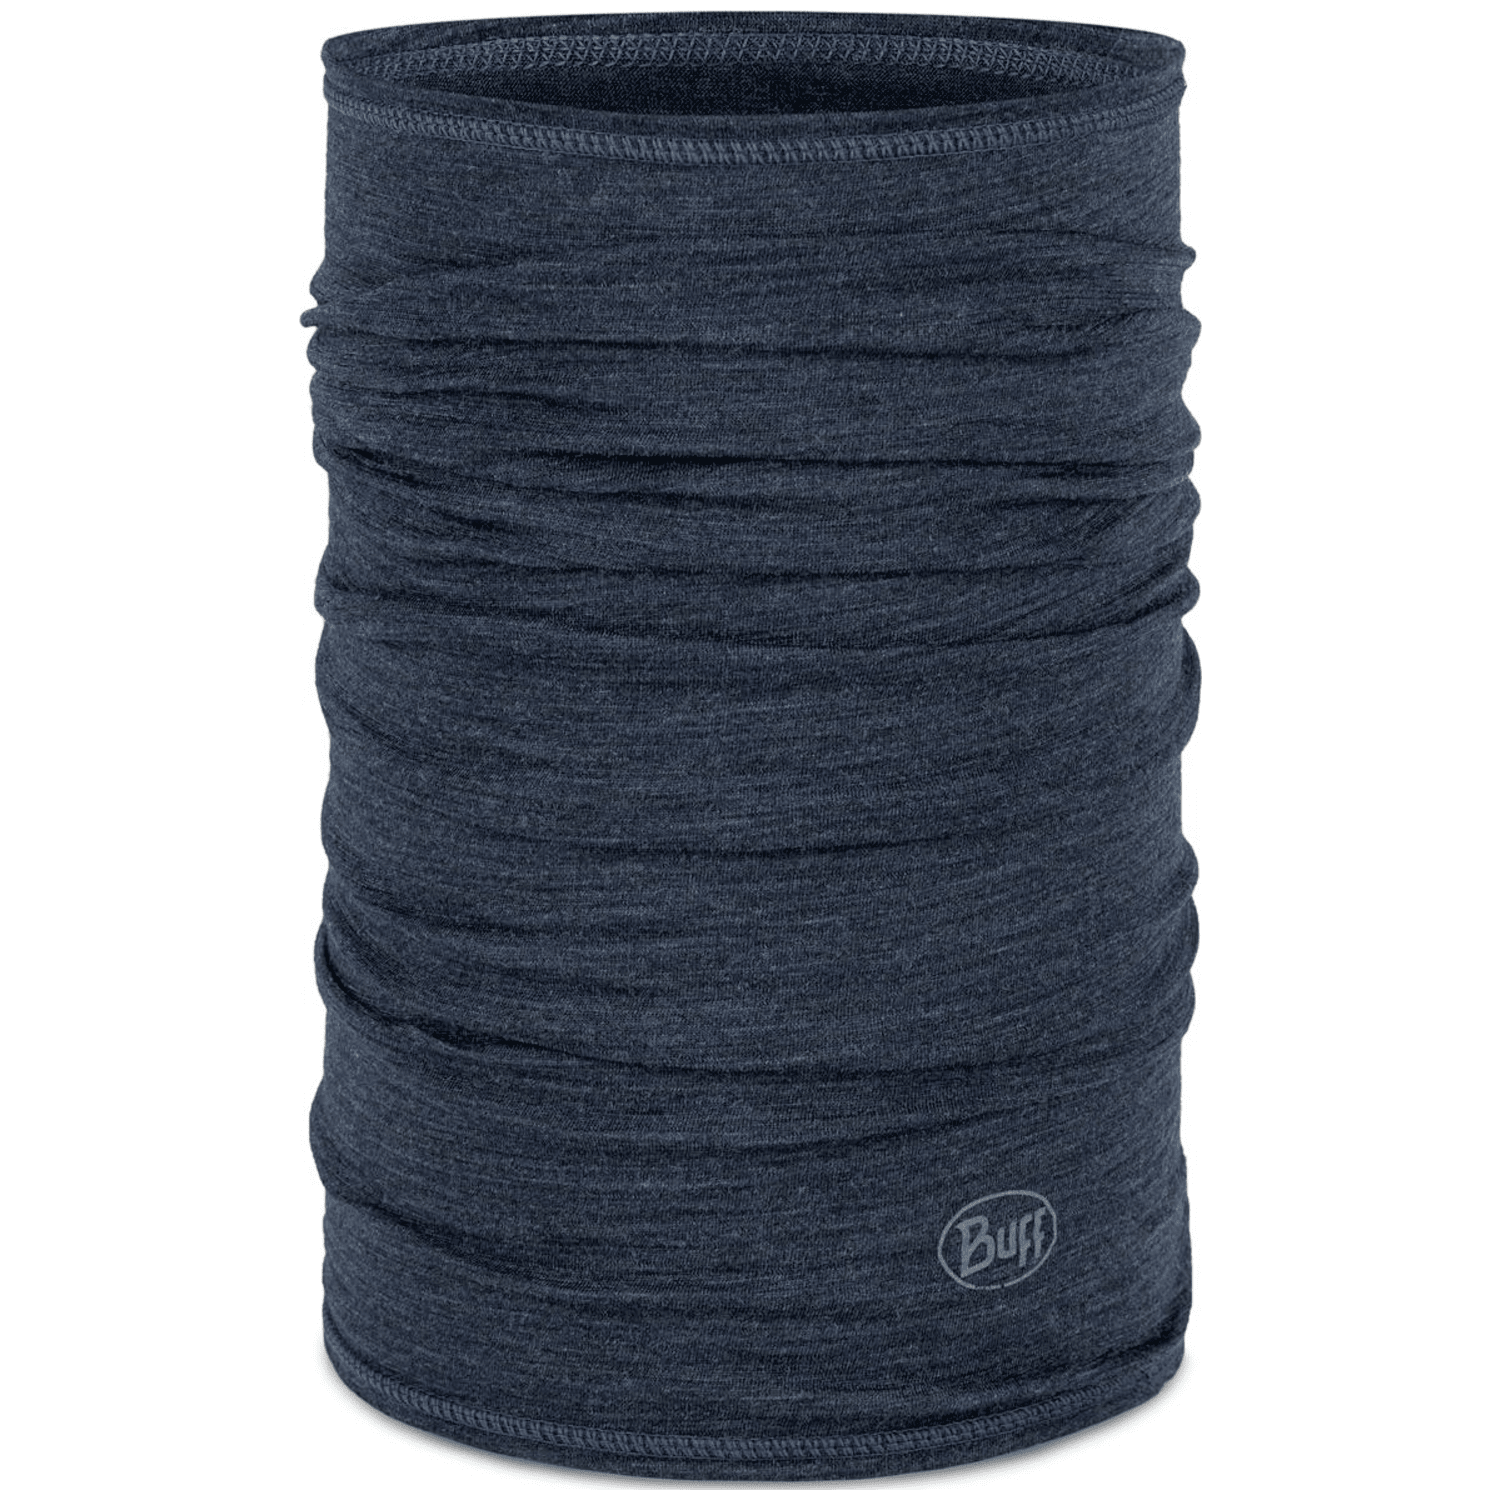 Buff Lightweight Merino Wool Unisex